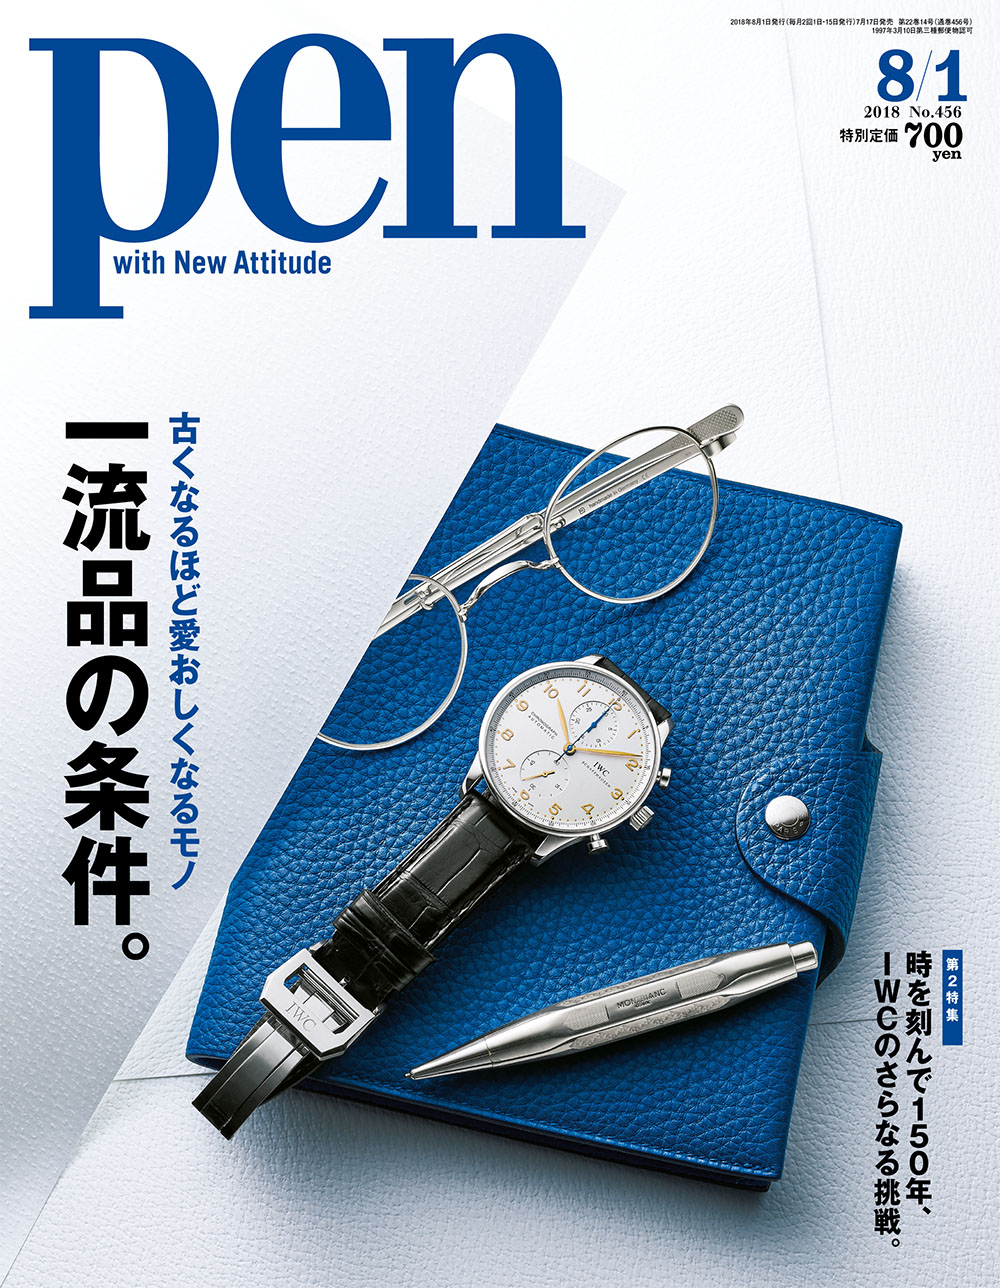 腕時計、レザーグッズ、バッグなど使い込むほど魅力的になる一流品を雑誌「pen」が特集